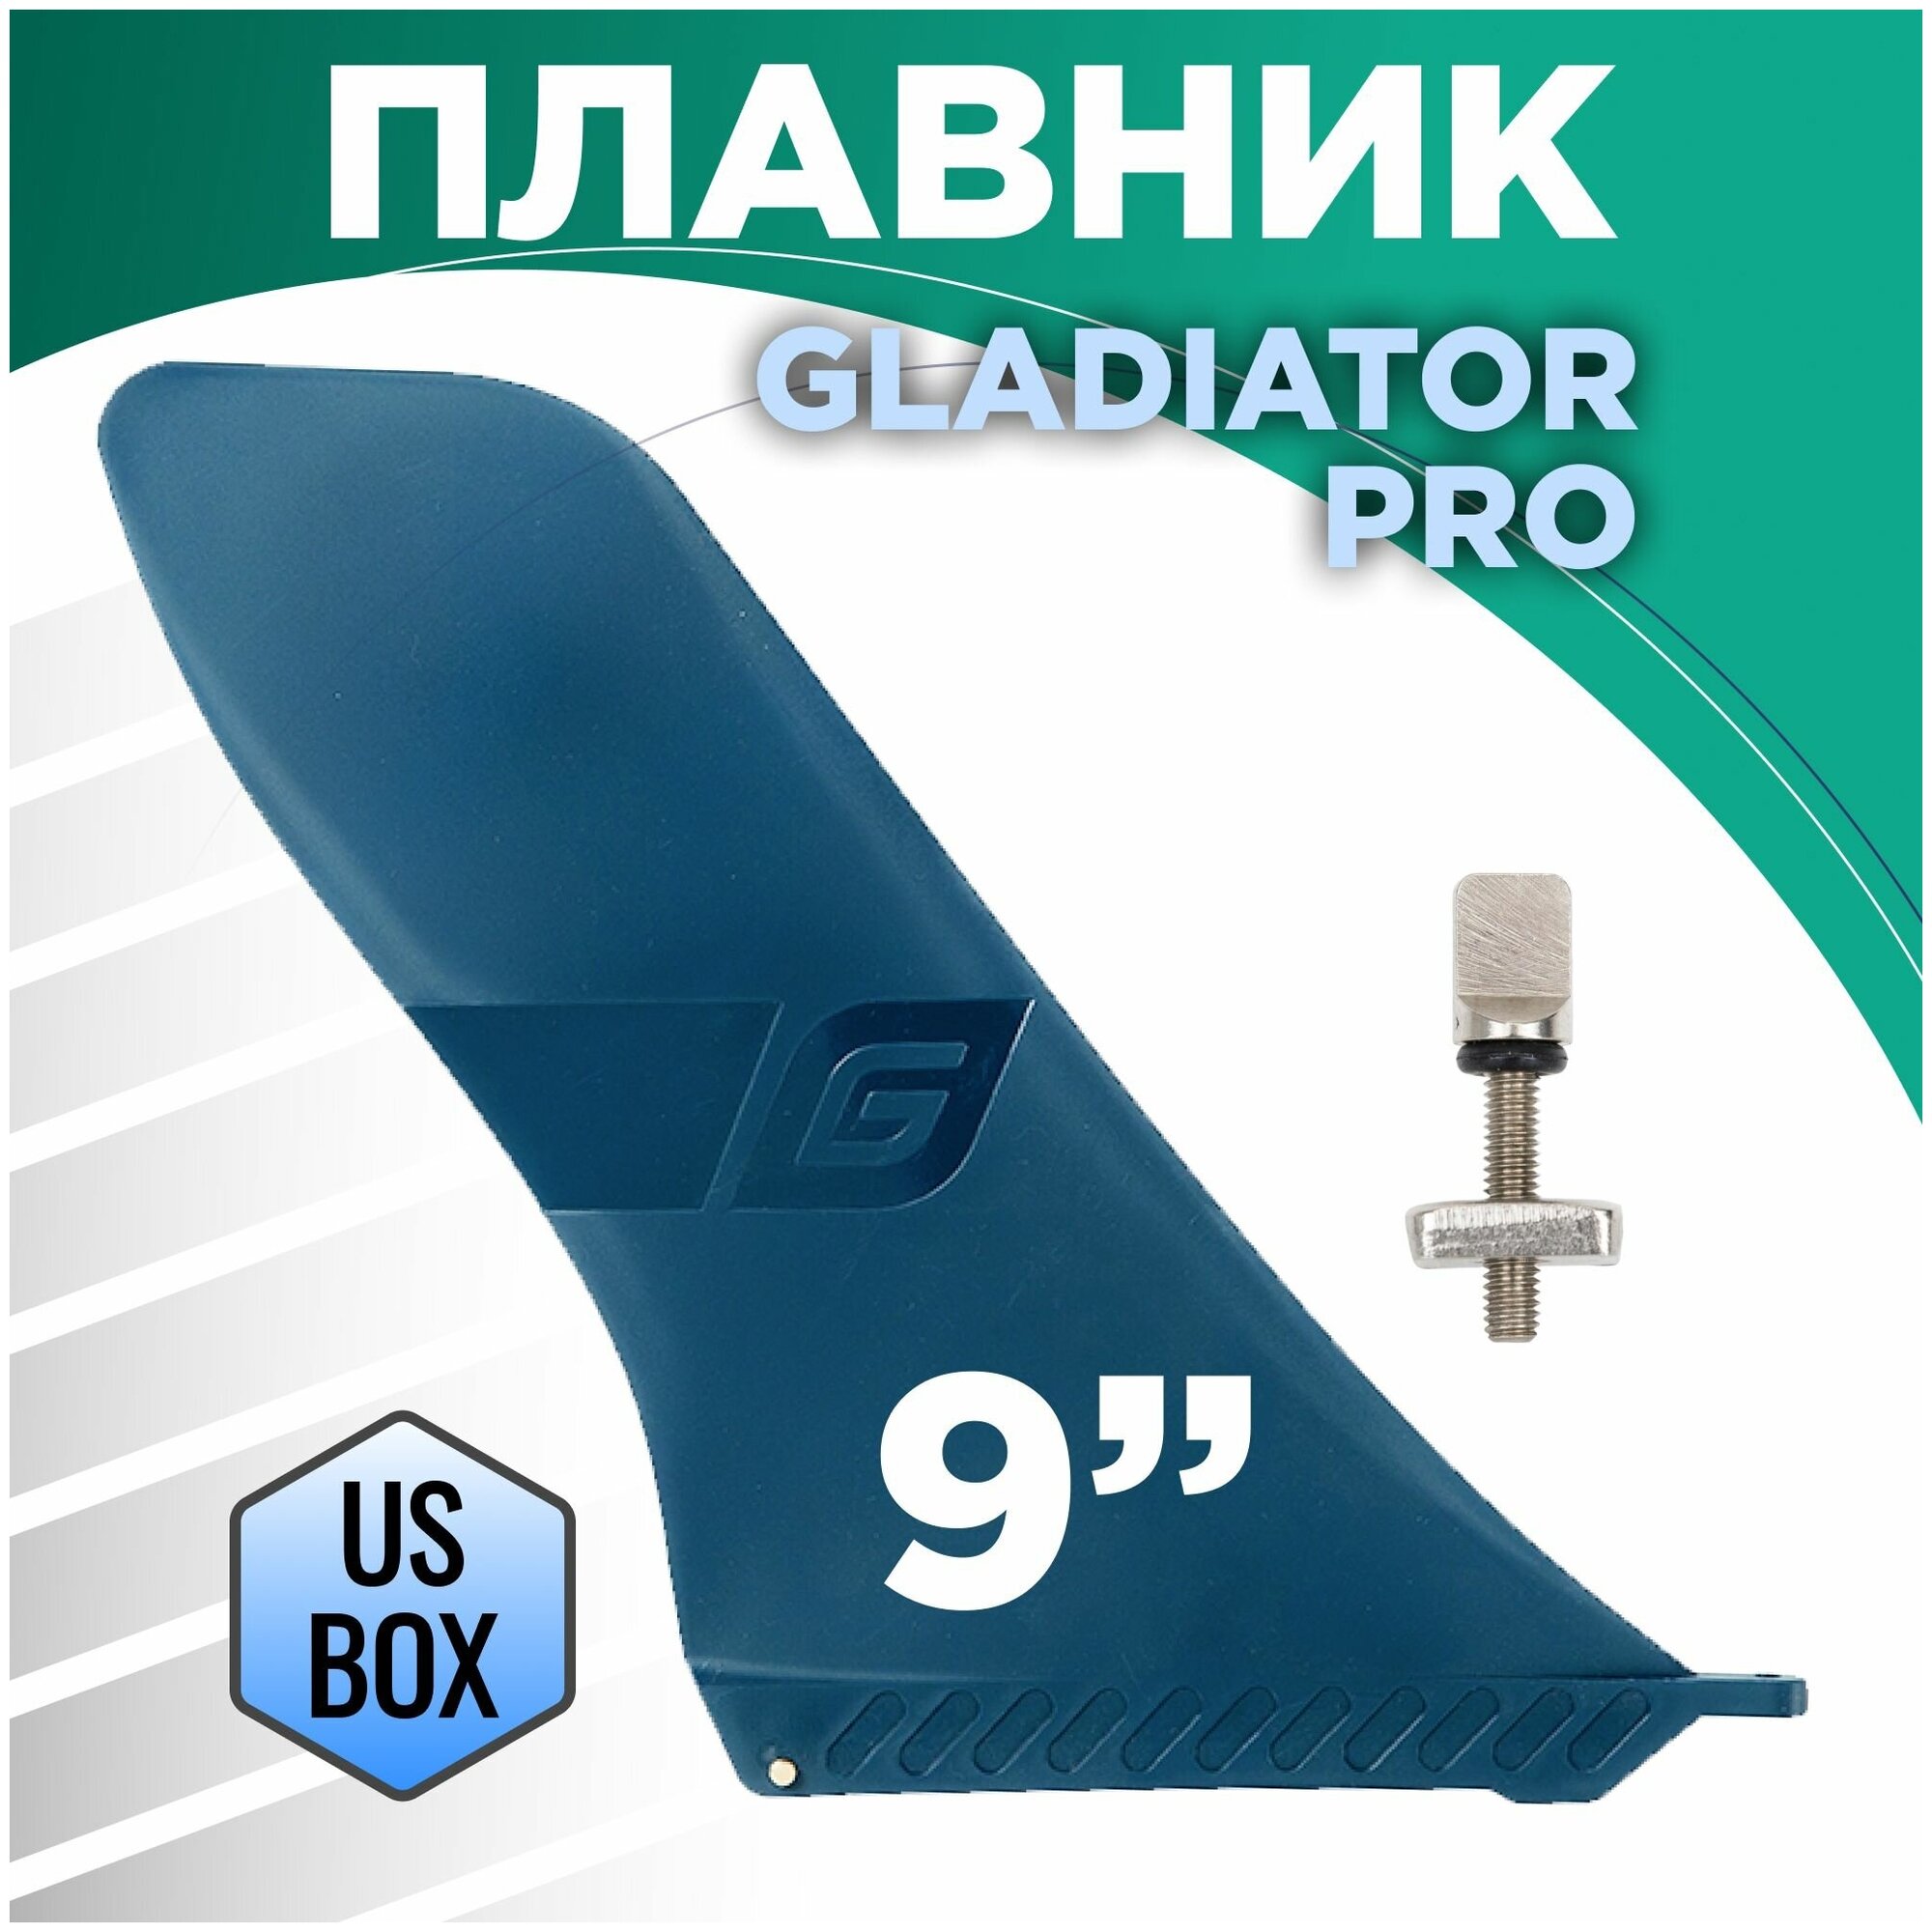 Плавник Gladiator PRO 9 UsBox для SUP доски (САП борд) для сап серфинга надувного двухслойного с веслом